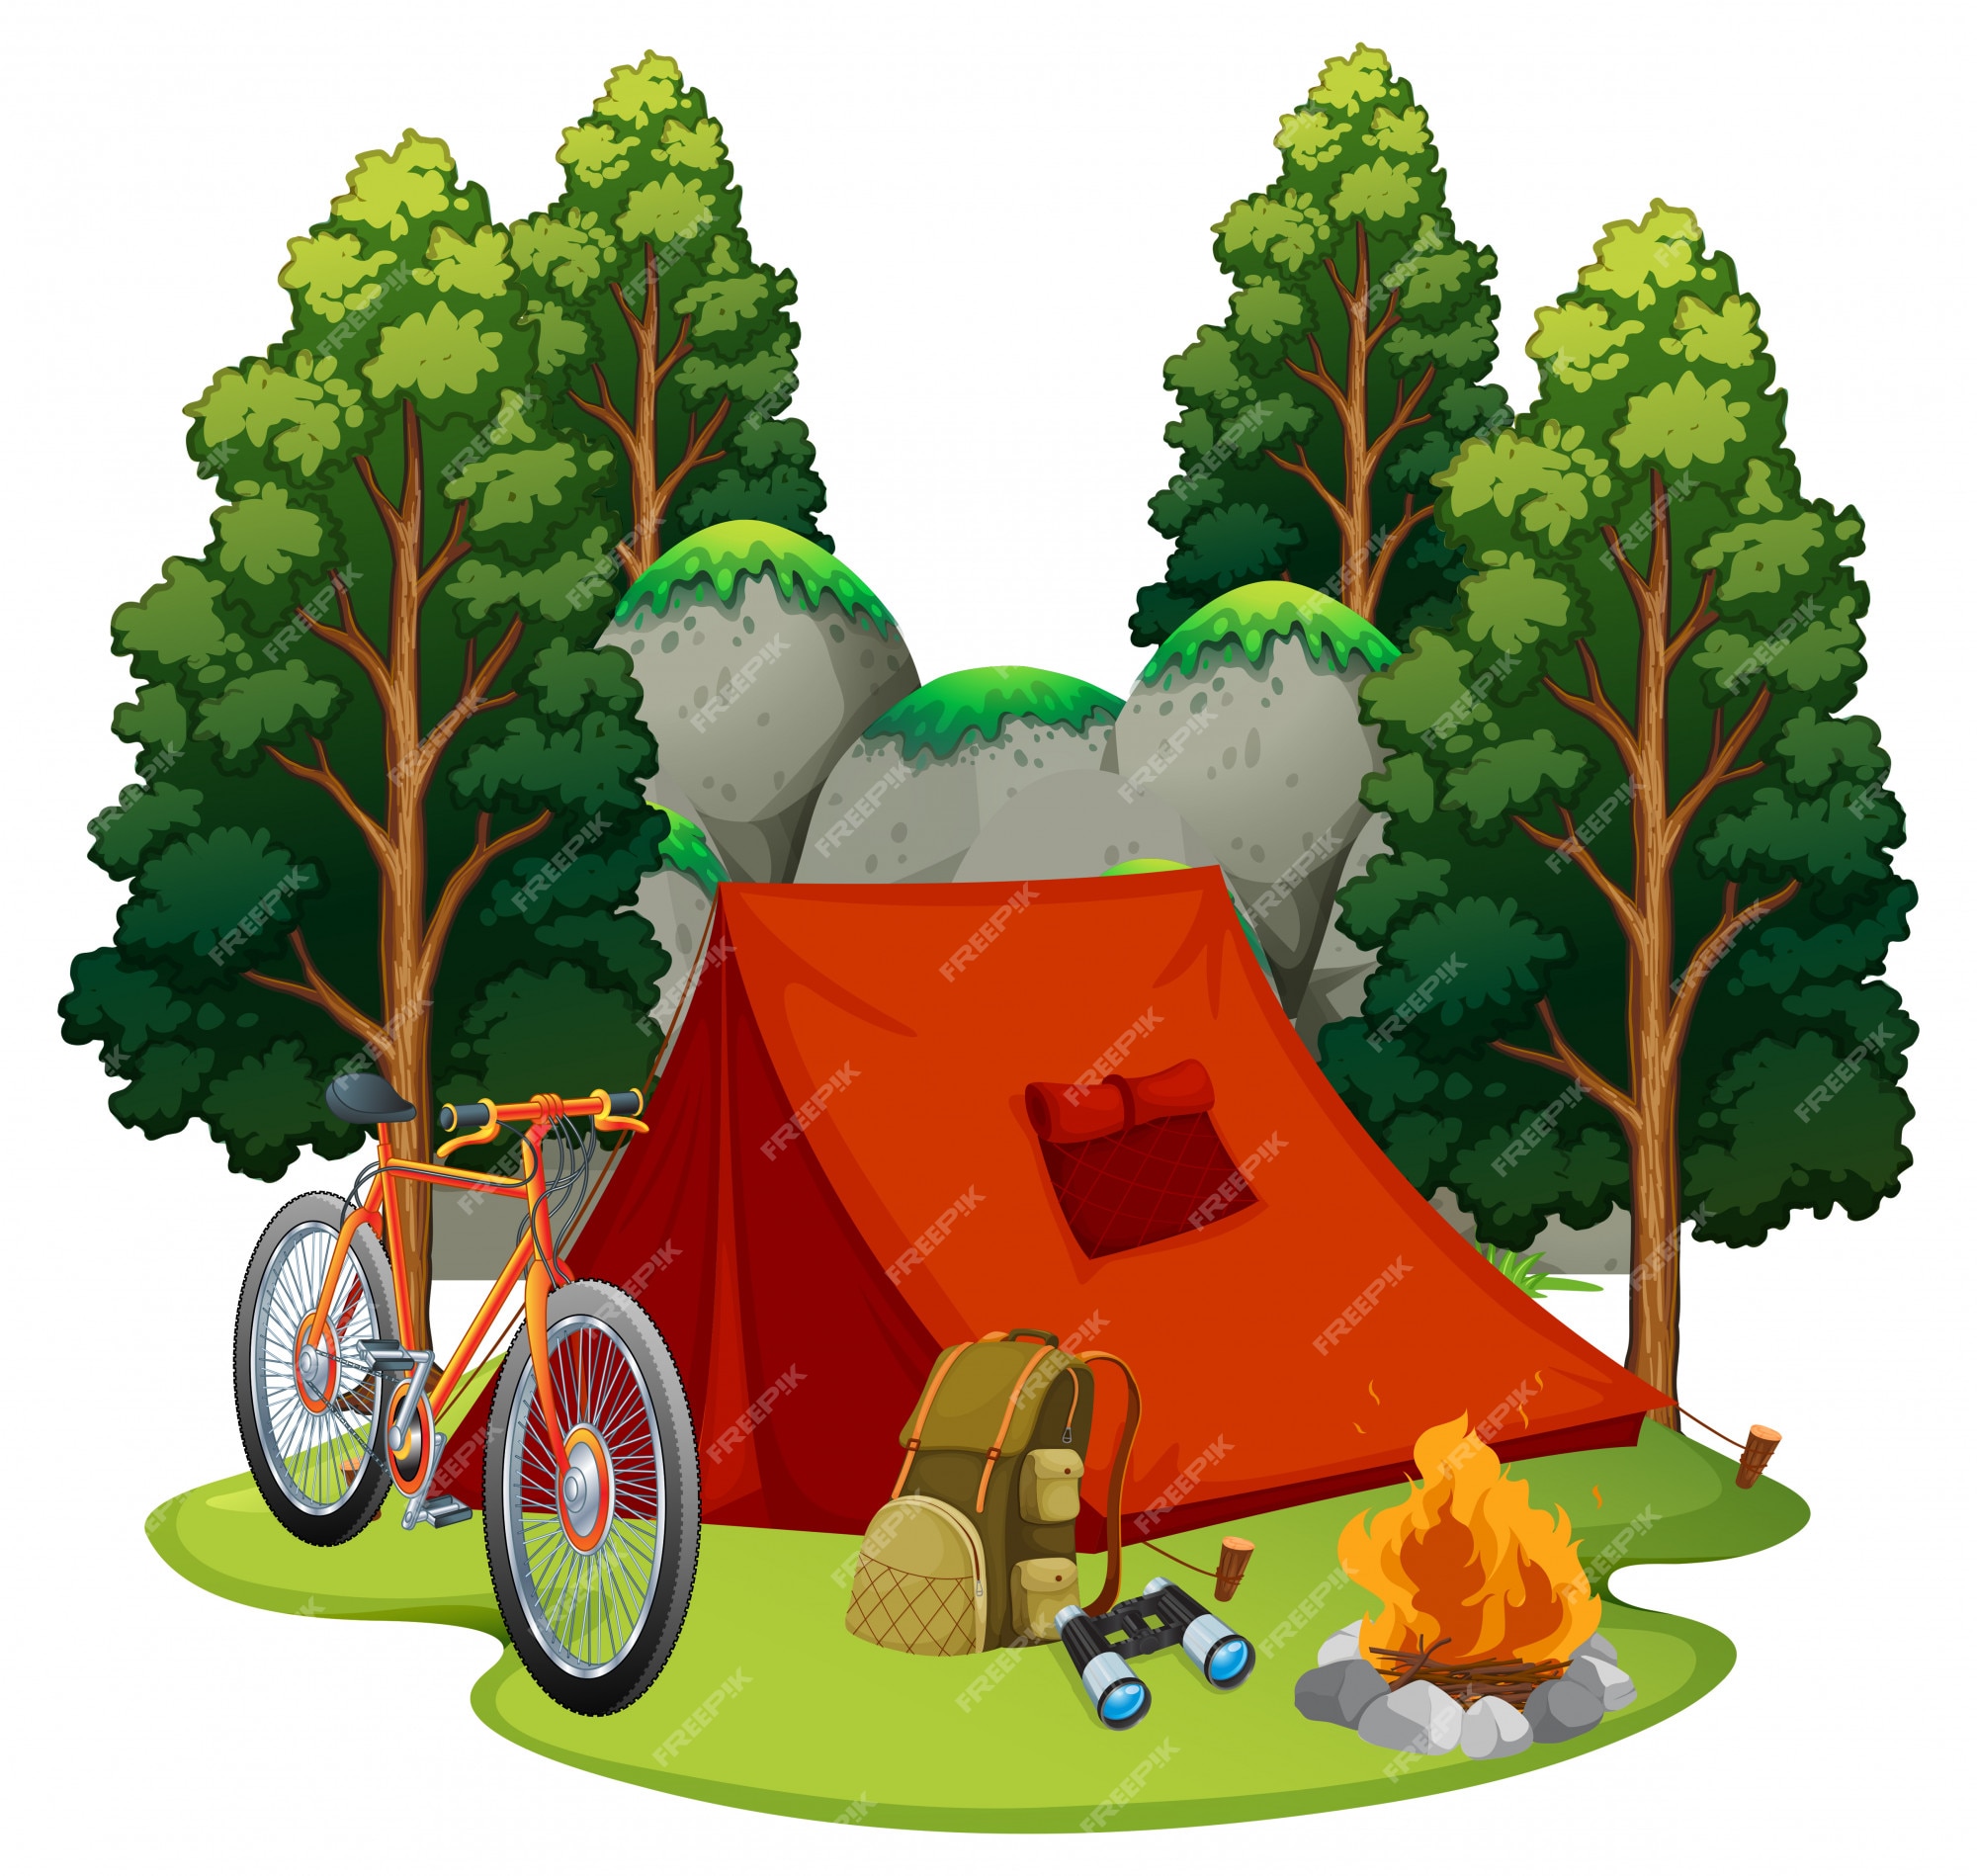 creatief nep overschrijving Tent clipart Vectors & Illustrations for Free Download | Freepik